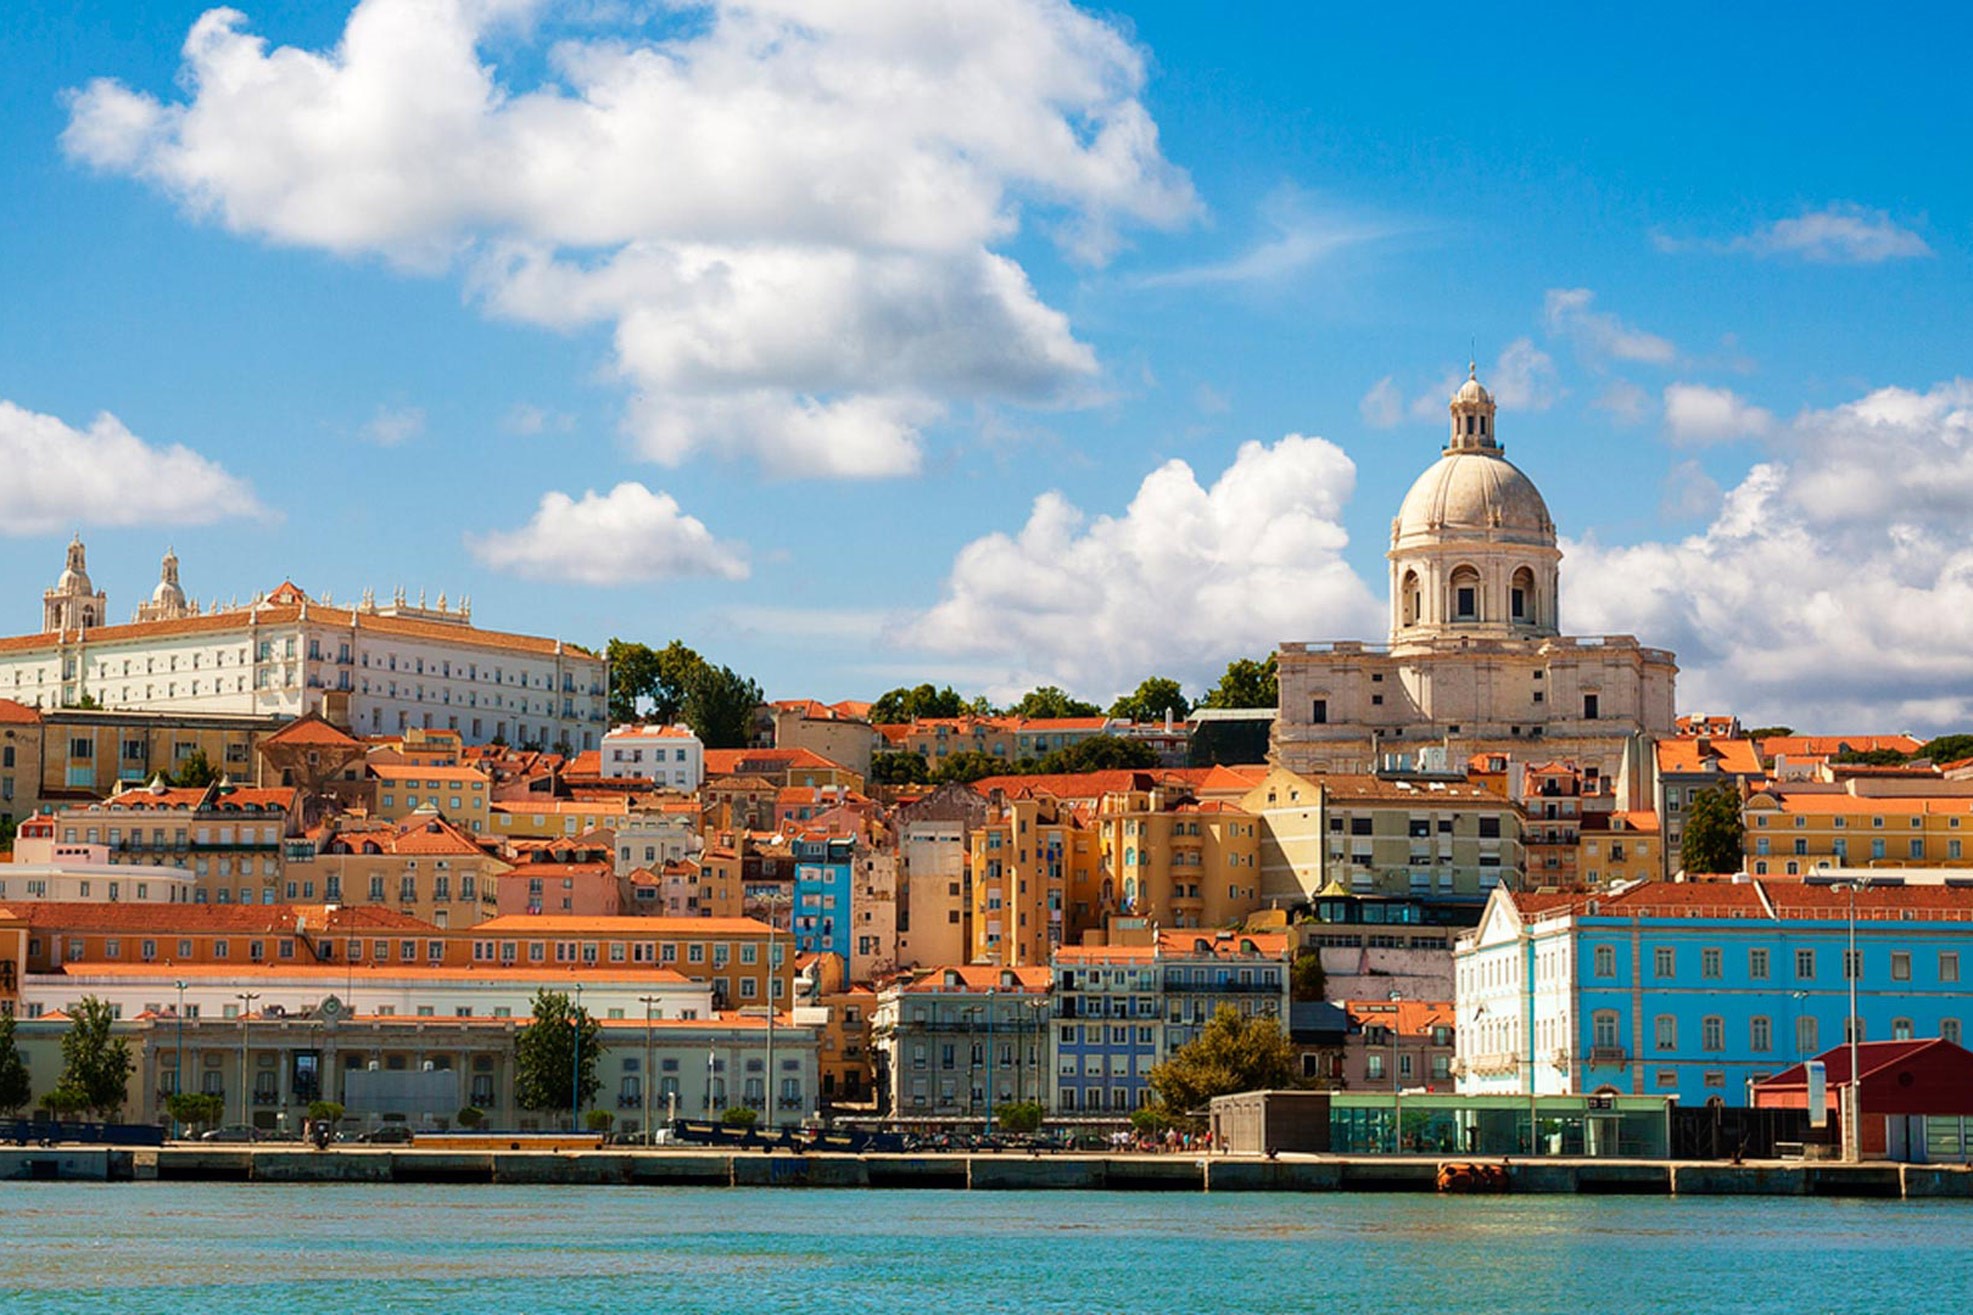 Lisbon là sự kết hợp hoàn hảo giữa nét đẹp quyến rũ và cổ điển, cùng tiện nghi hiện đại.